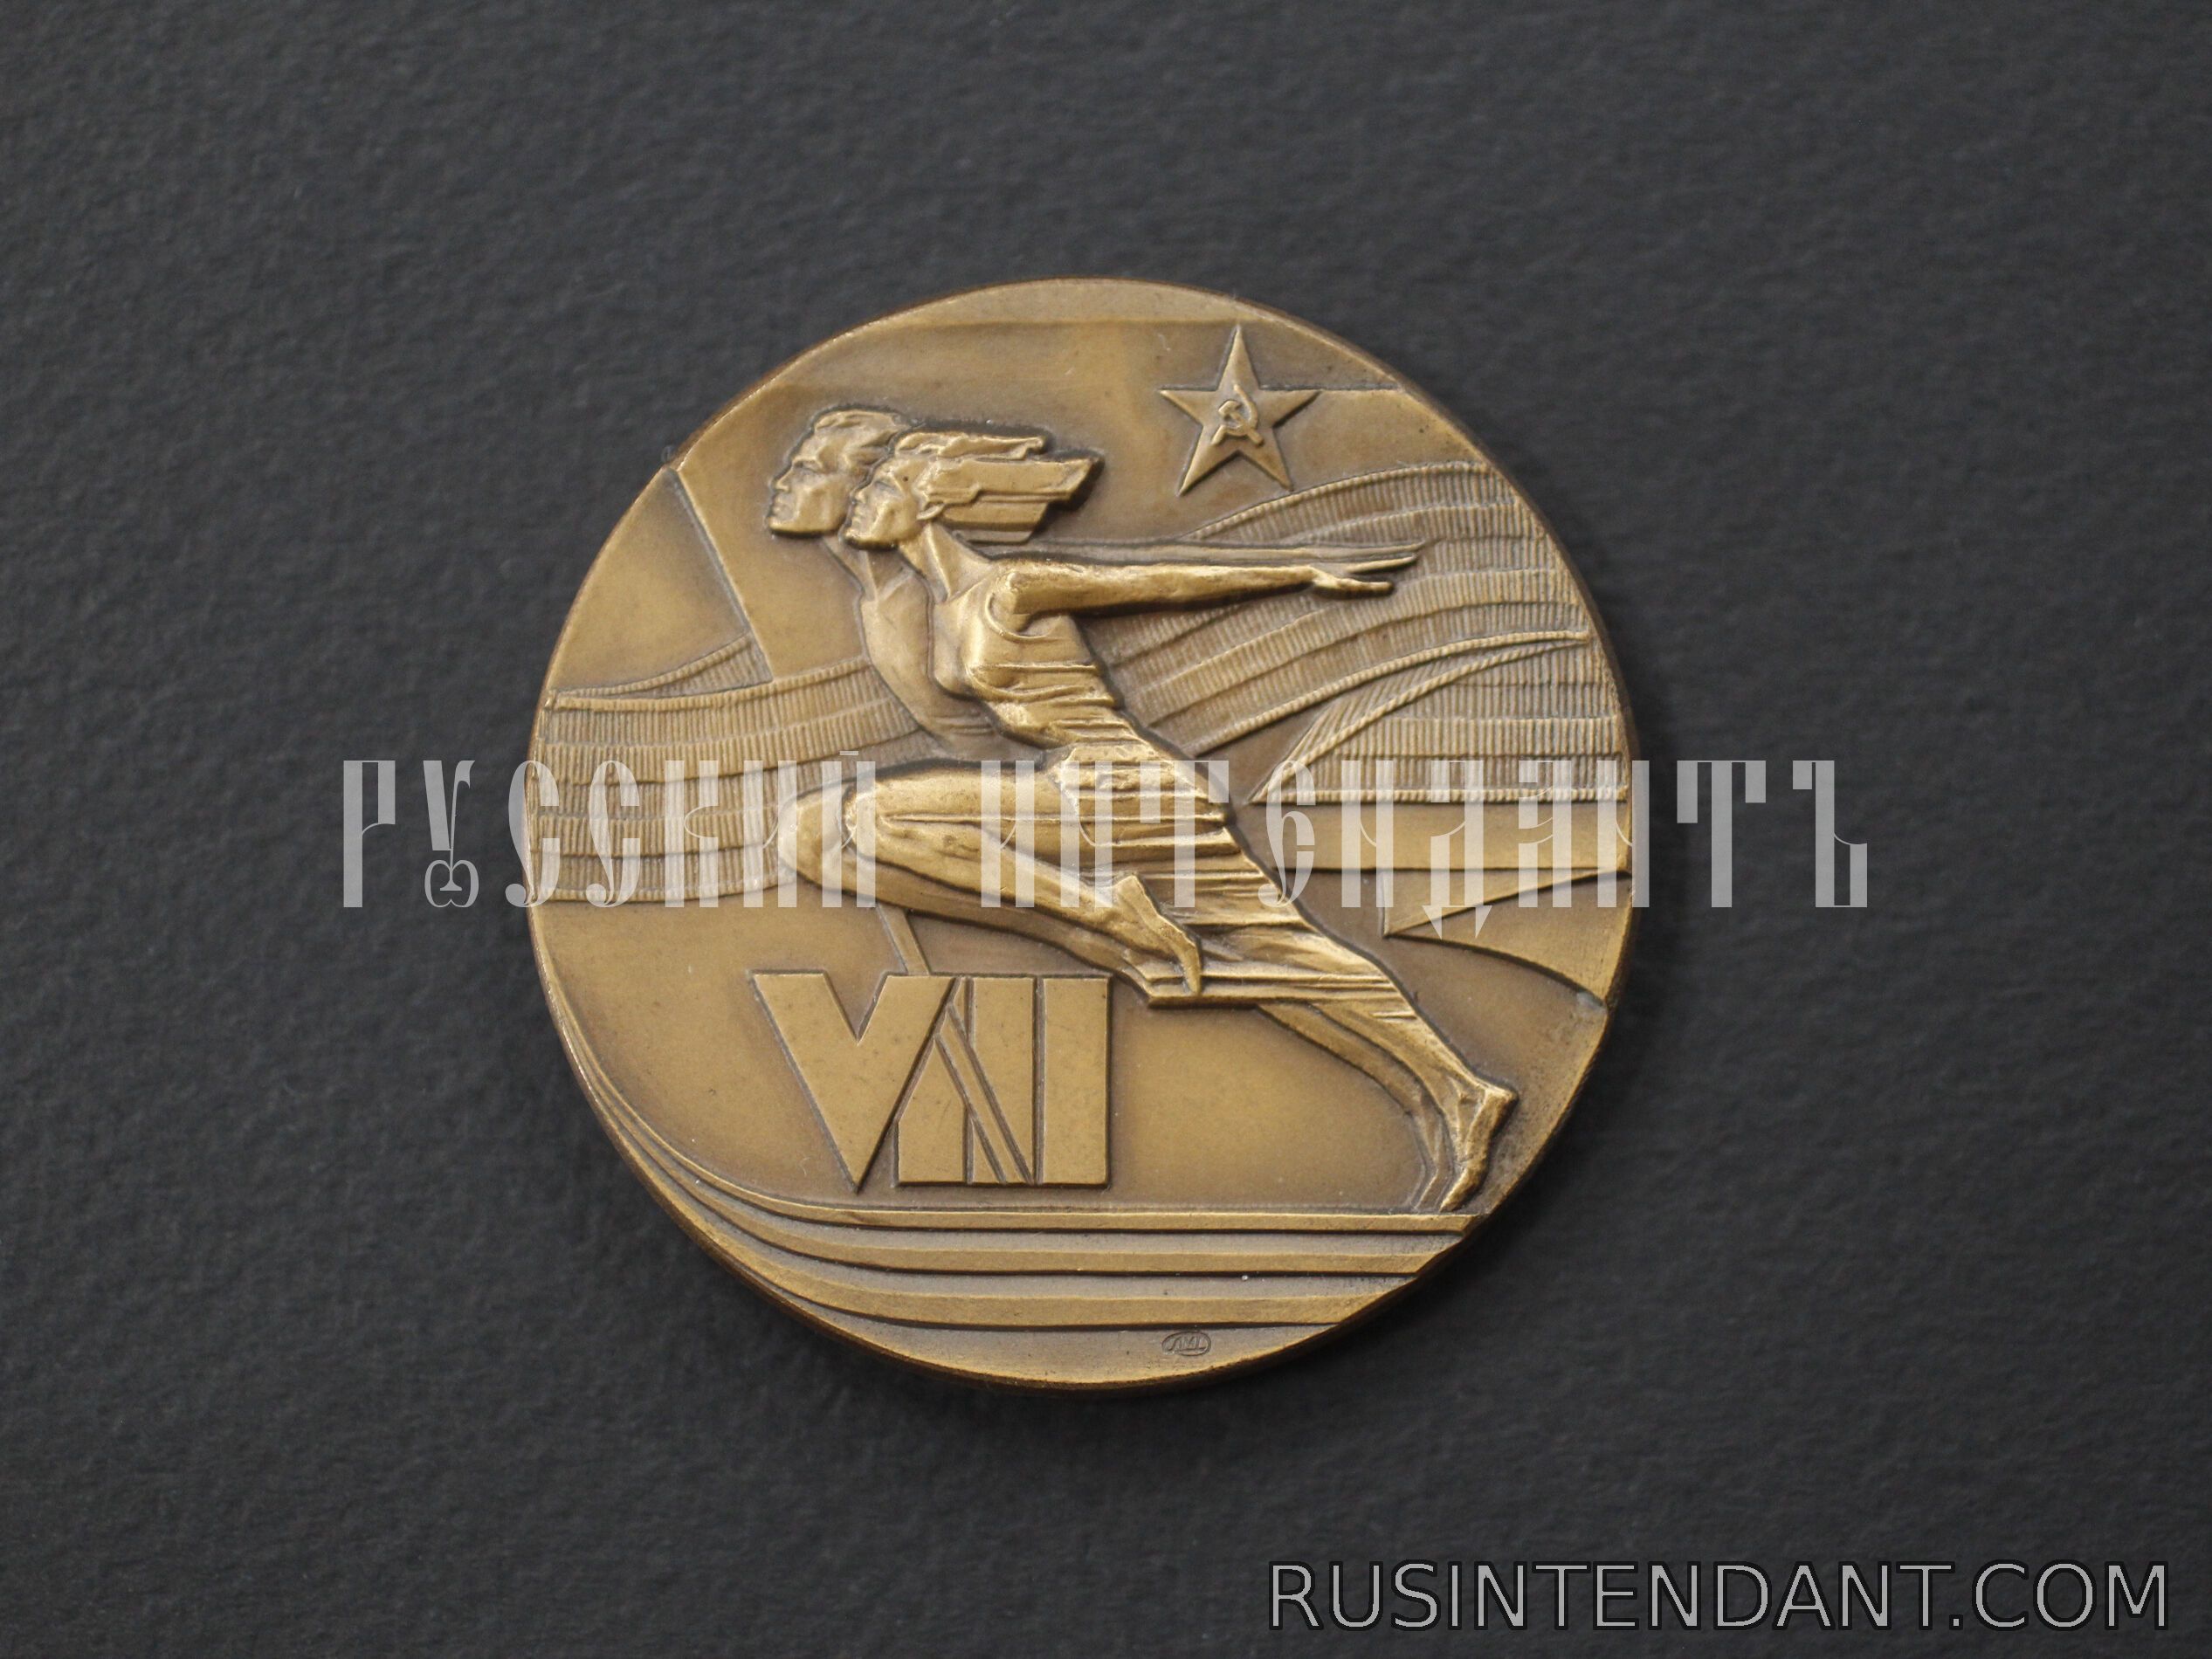 Фото 1: Настольная медаль «VIII Летняя спартакиада народов СССР» 